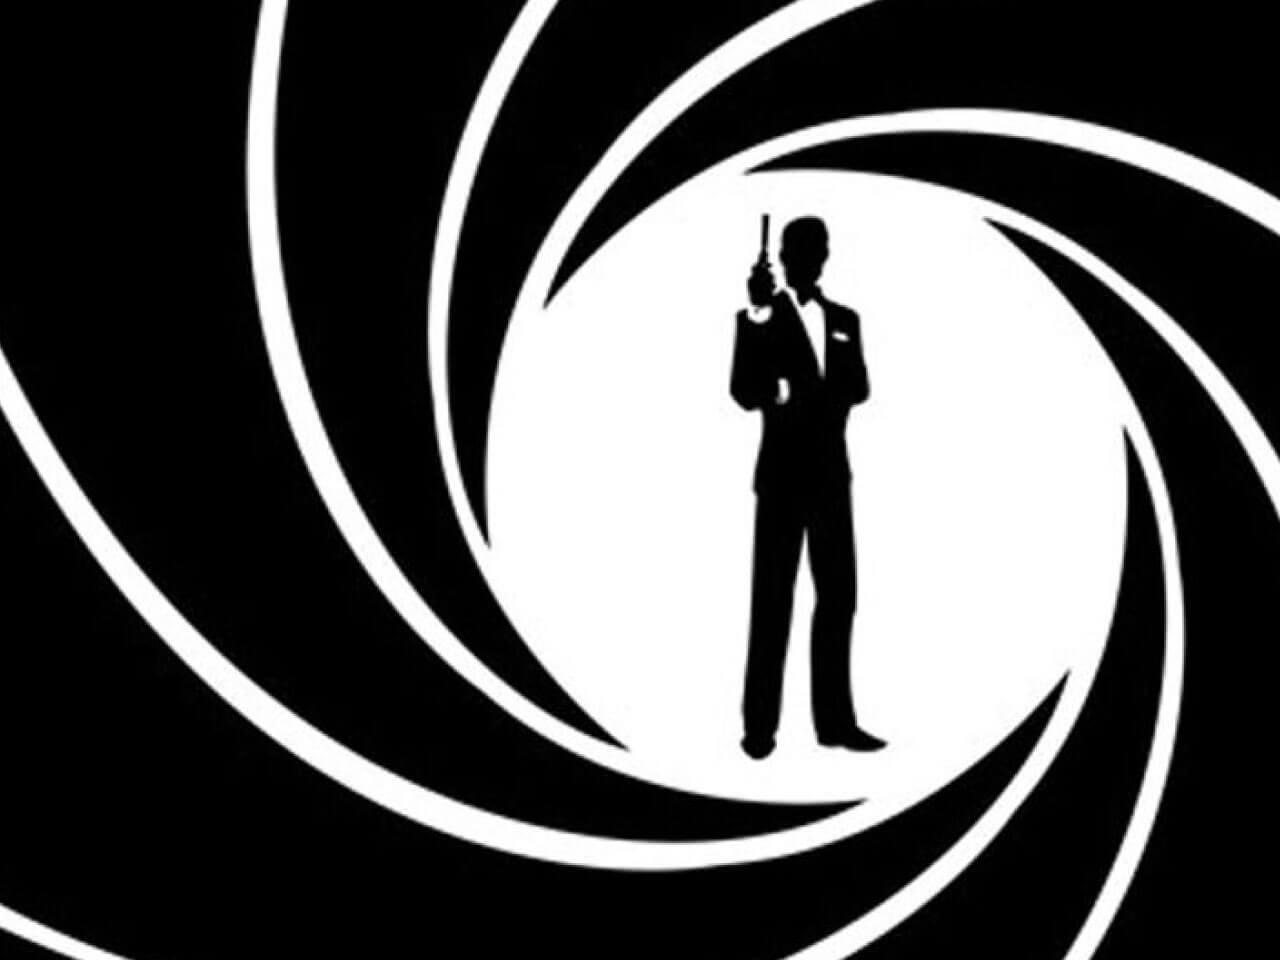 『007』シリーズ最新話の全米での公開日程が決定